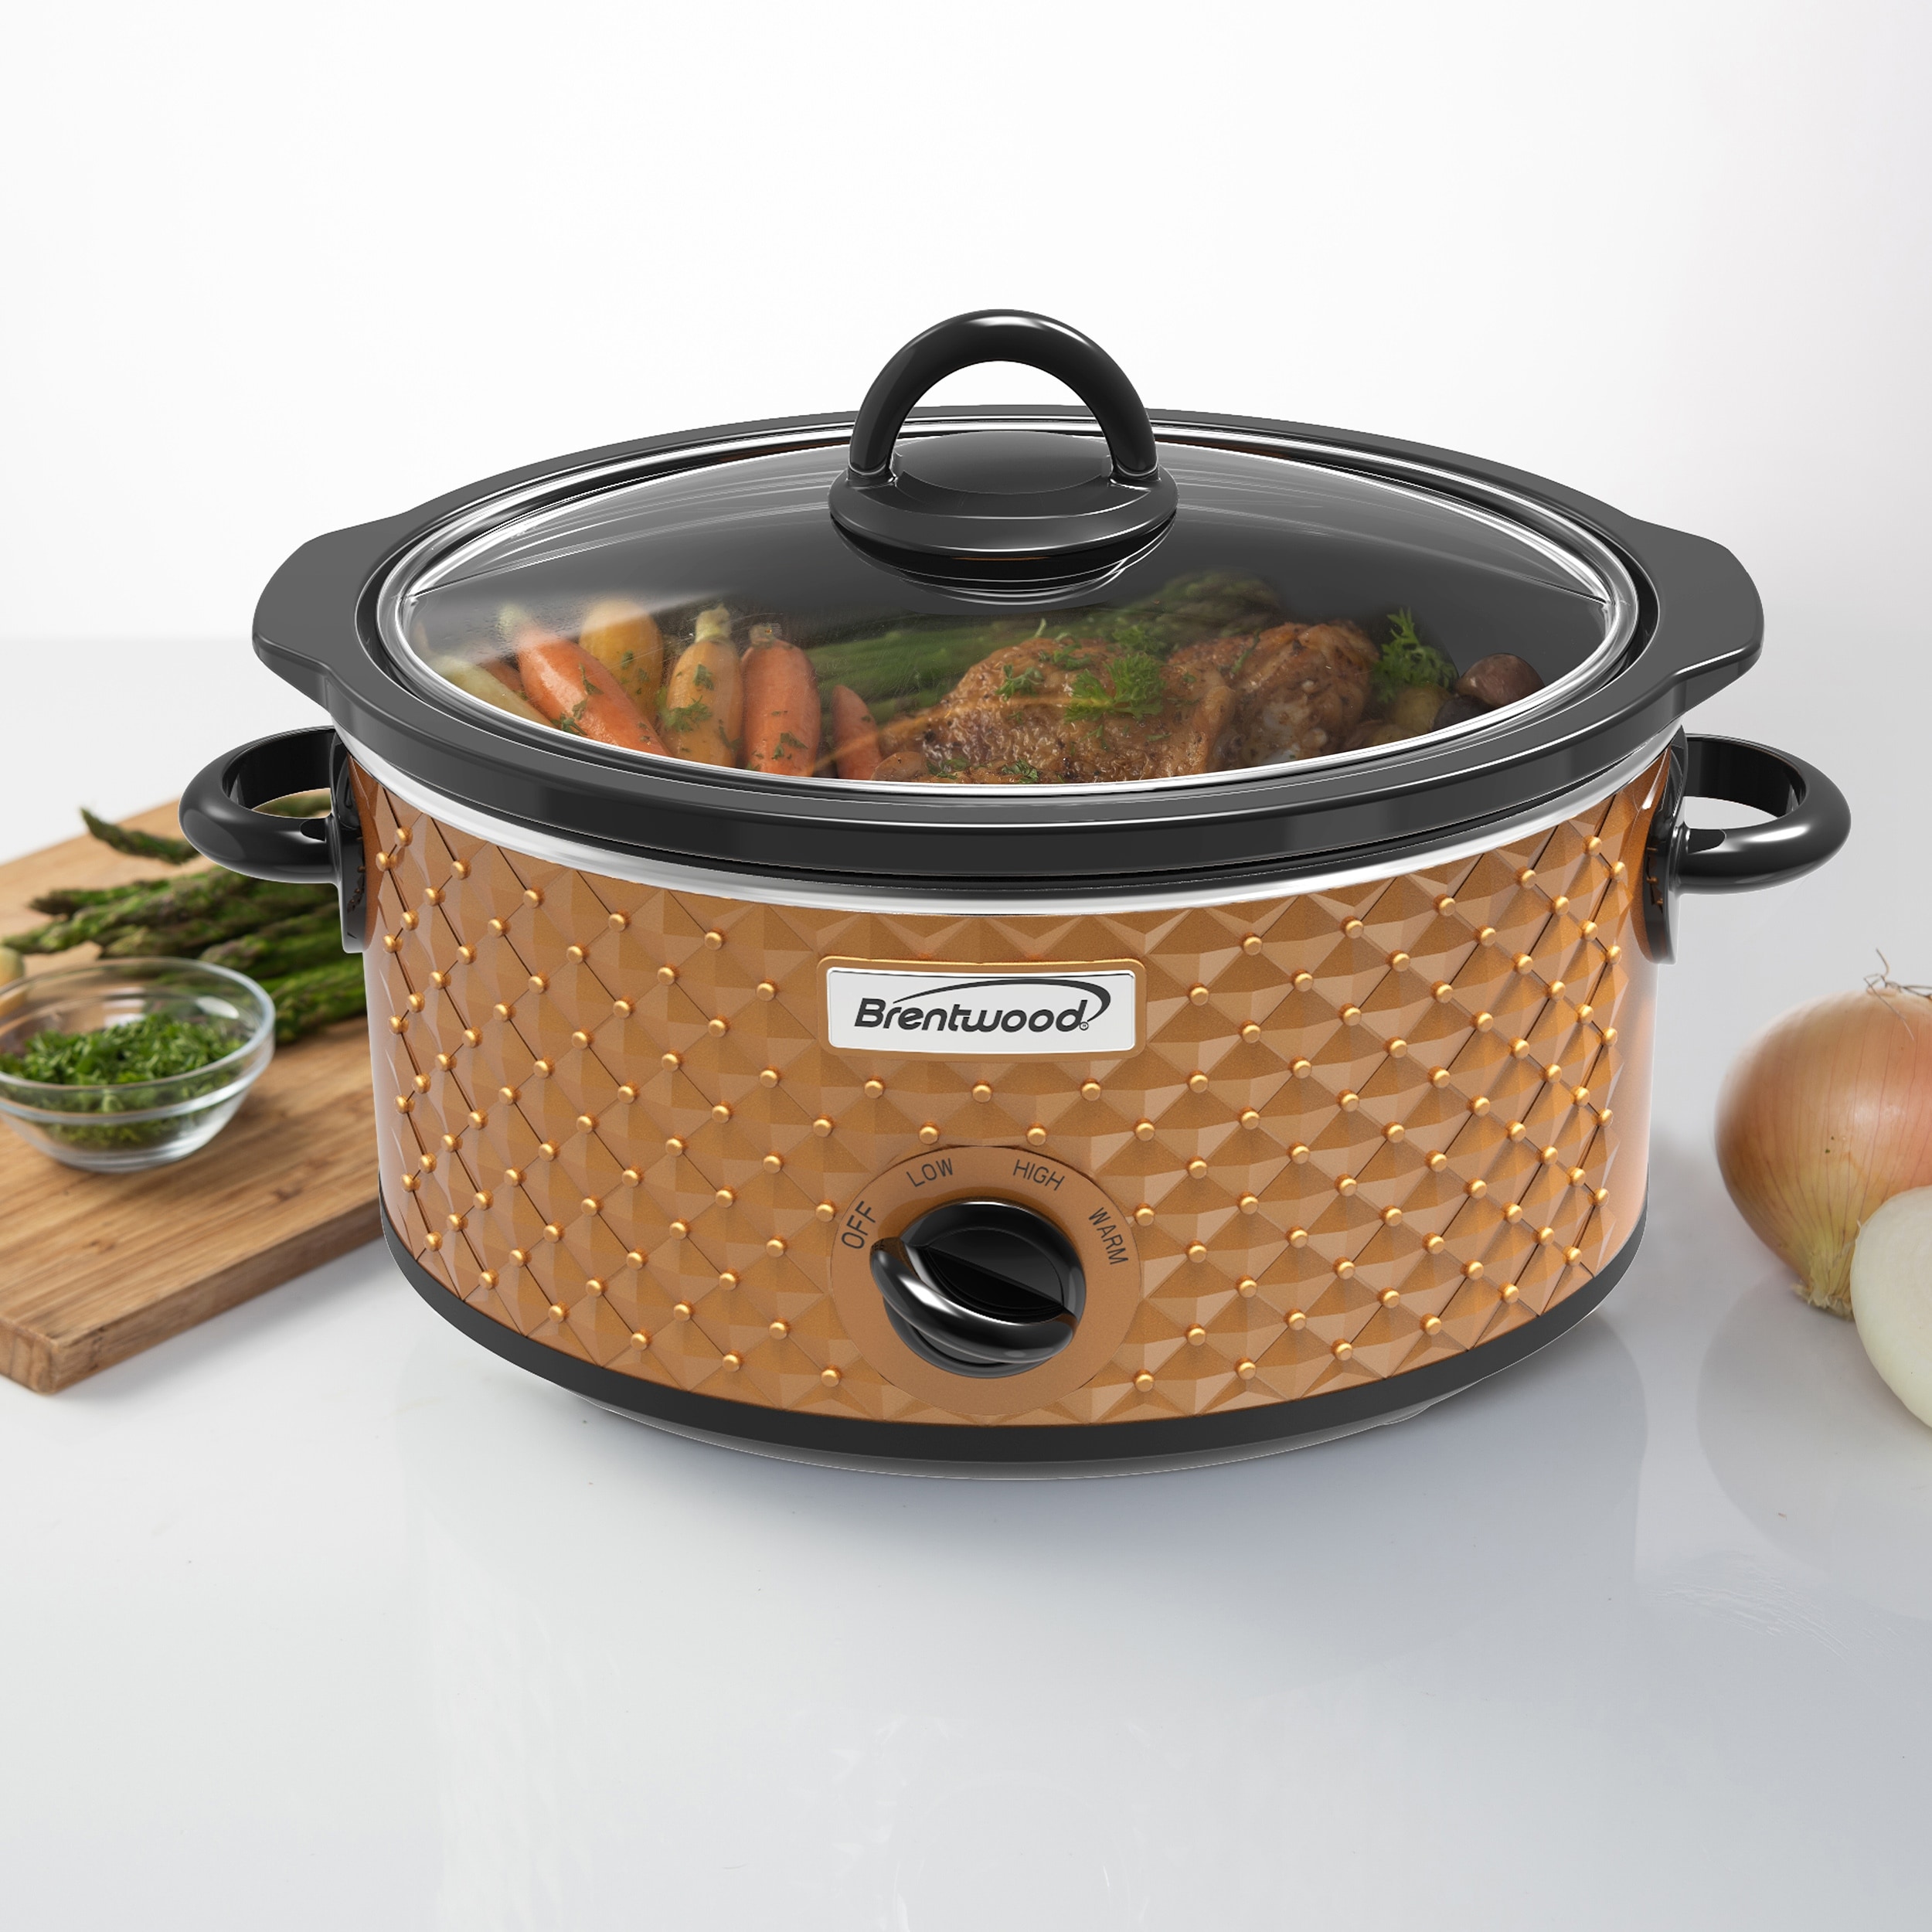  Crock-Pot 7 Quart Programmable Slow Cooker with Digital Timer,  Food Warmer, Polished Platinum: Home & Kitchen